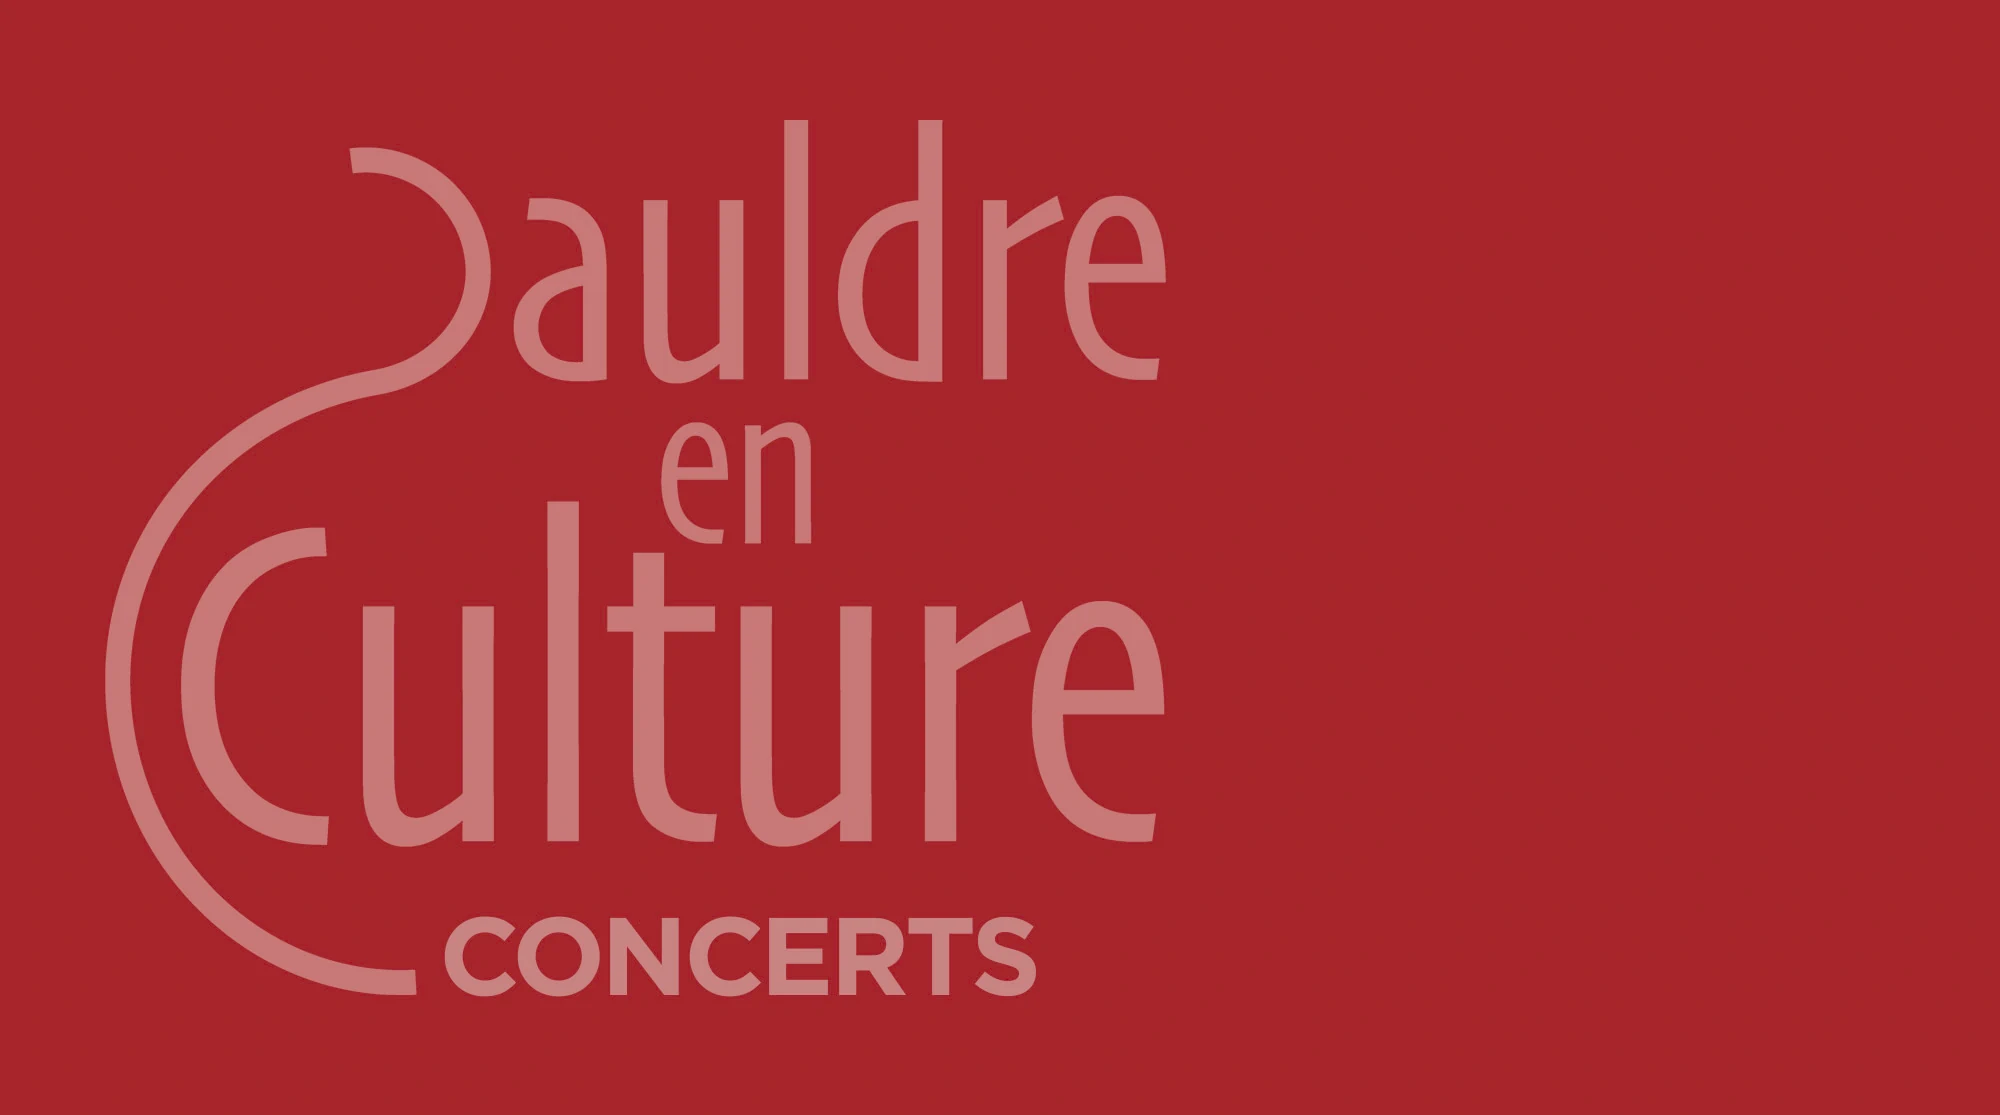 Sauldre-en-culture. Concerts